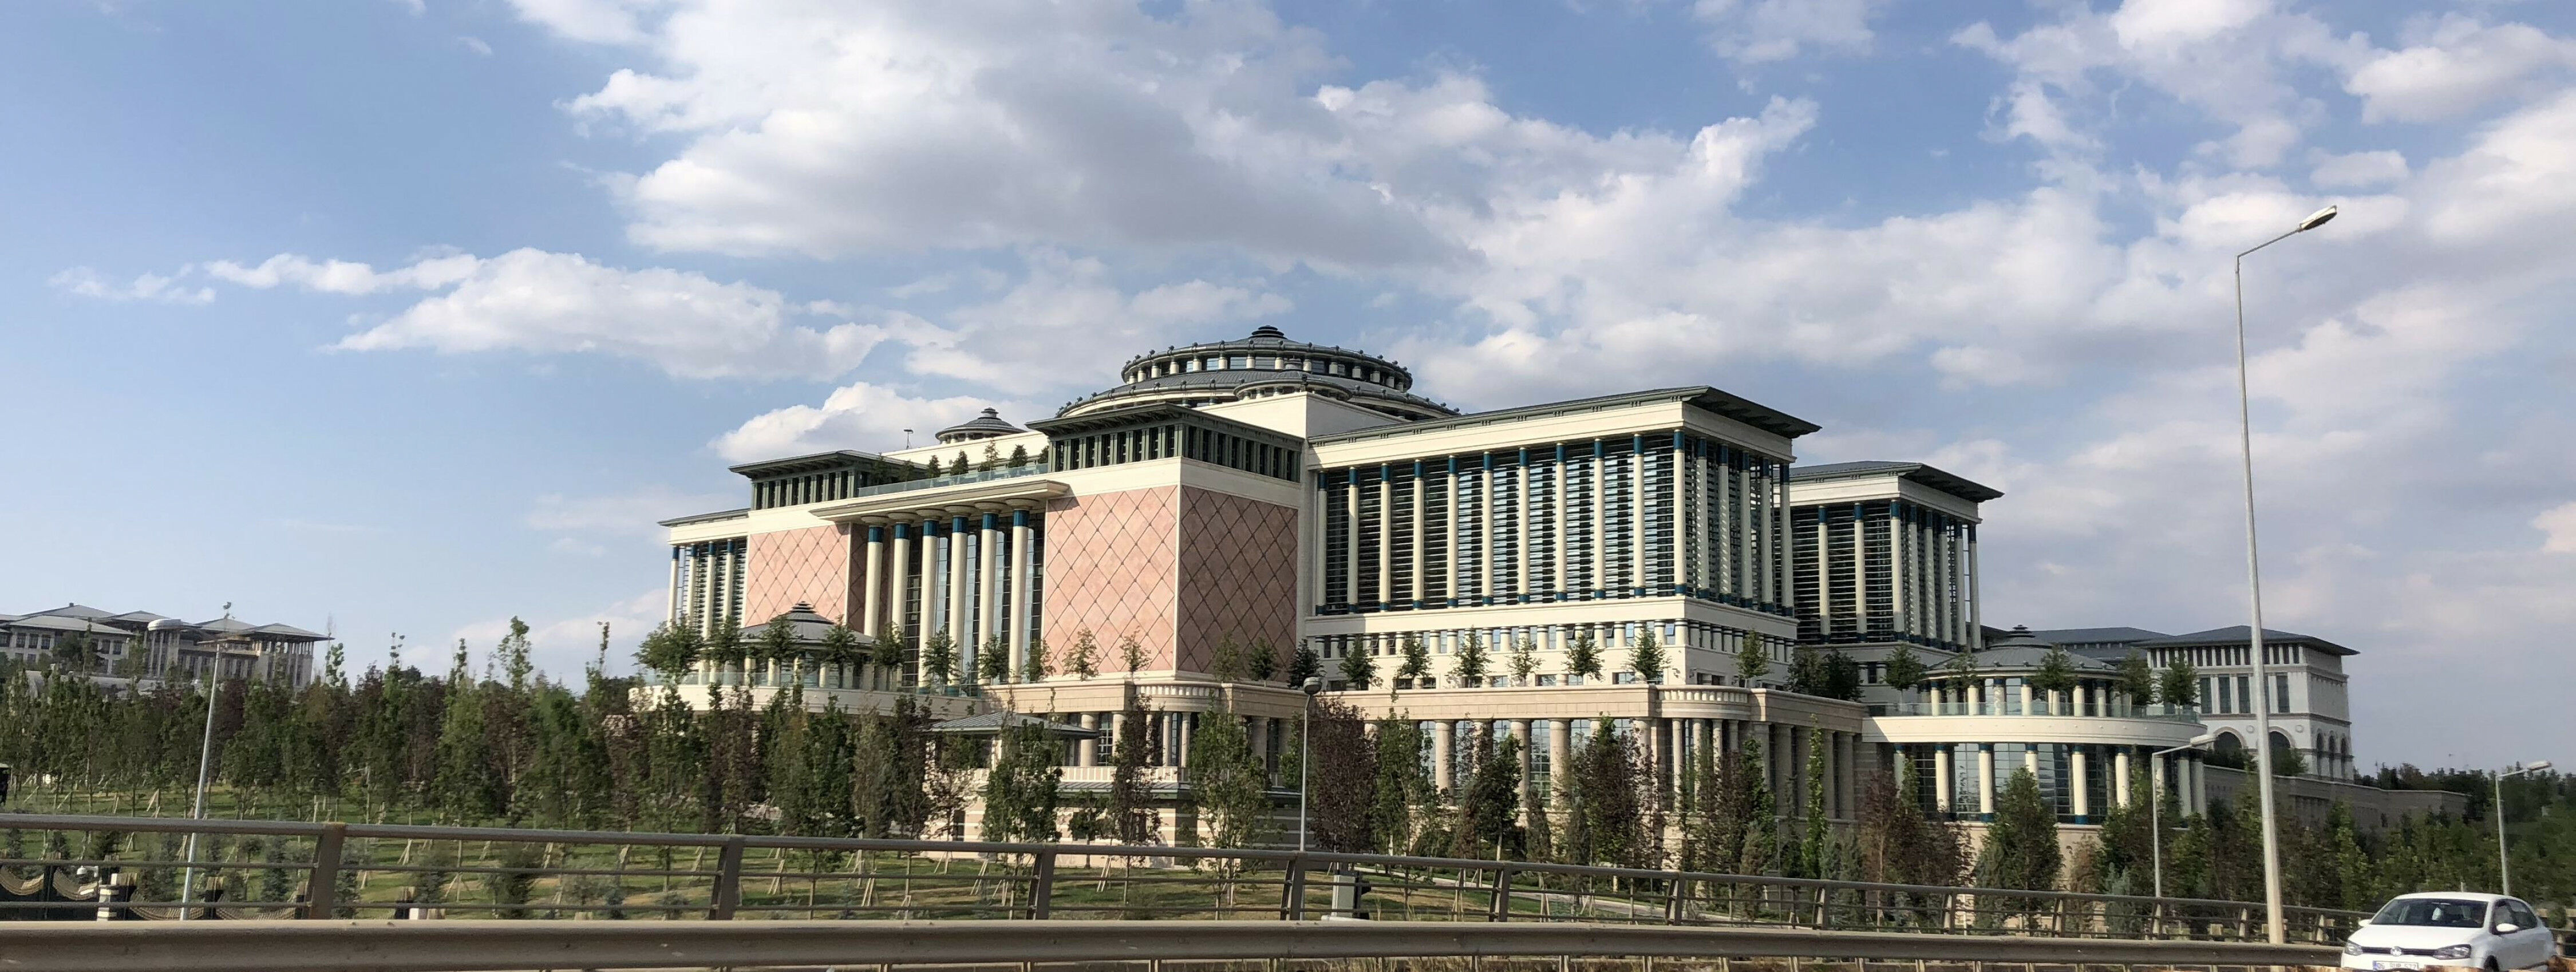 Bibliothek der Nation, Ankara